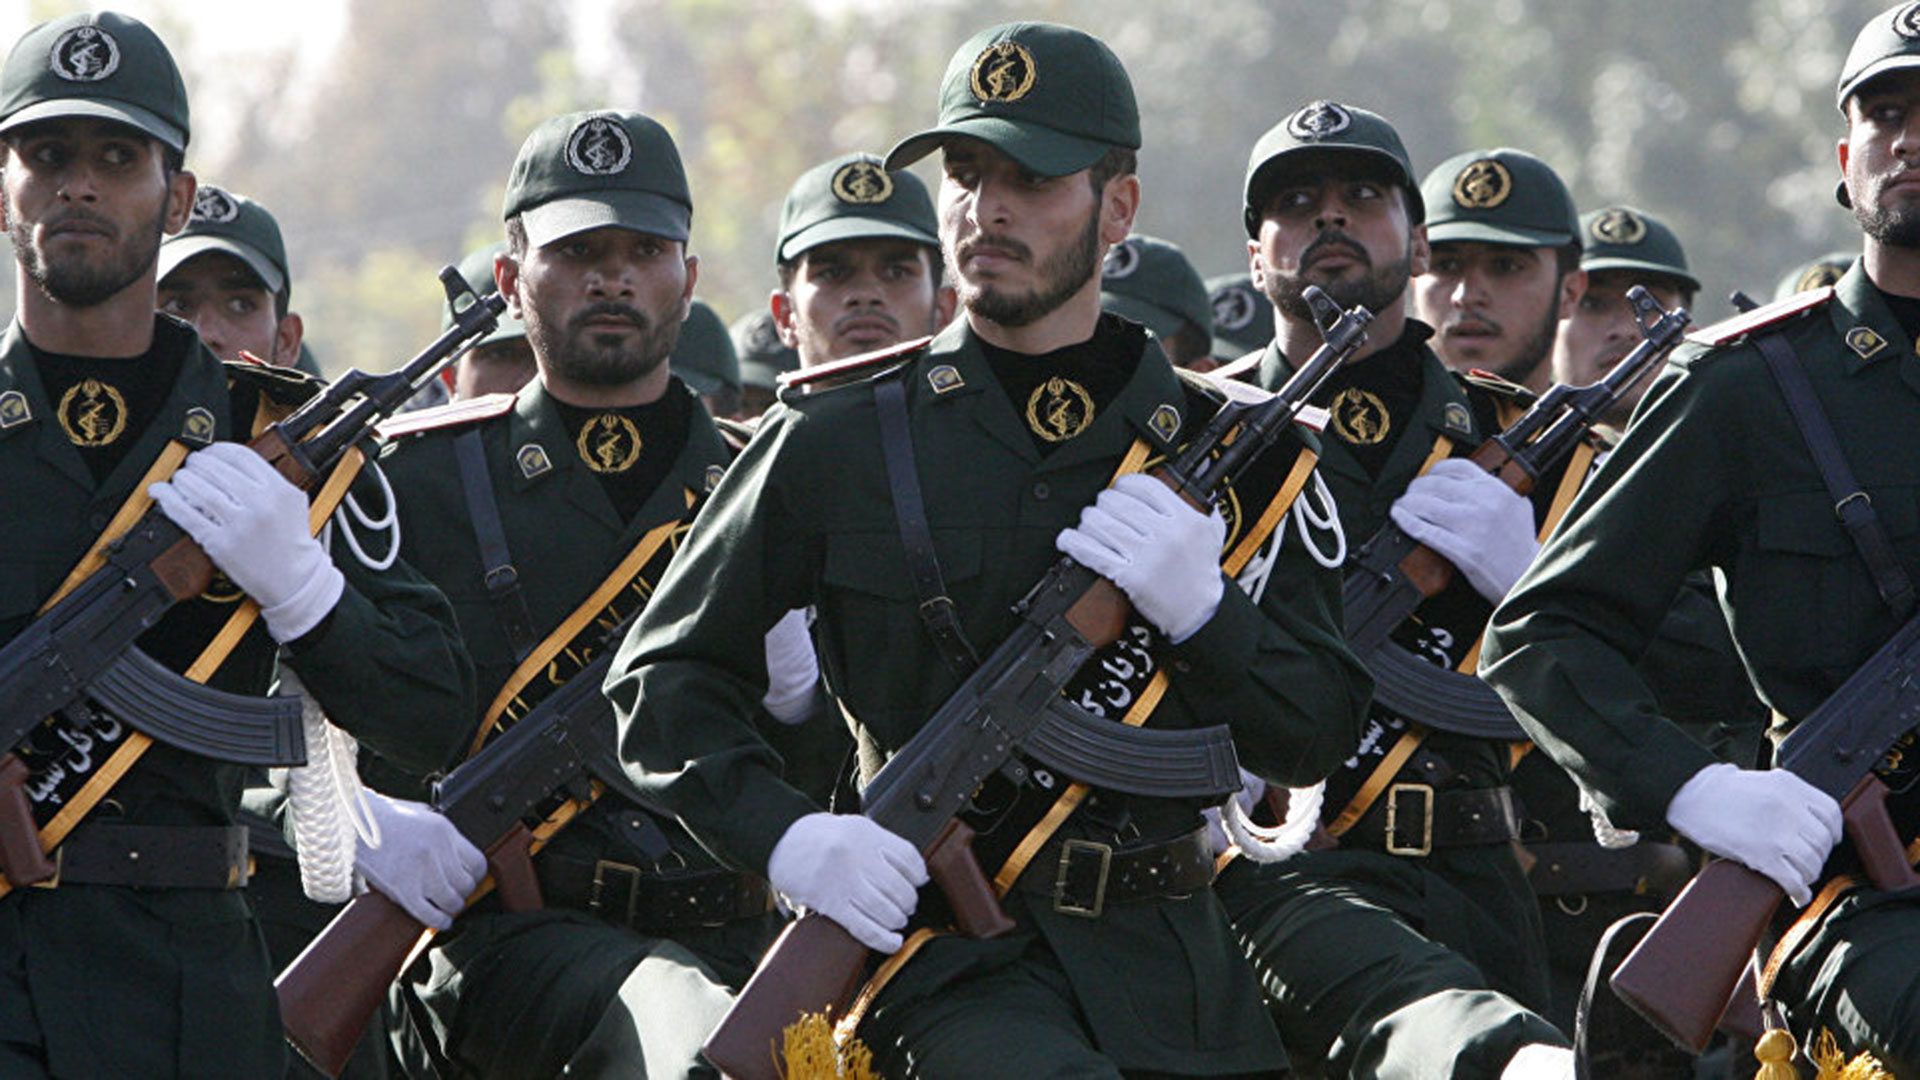 El régimen de Irán desplegó unidades blindadas cerca de la frontera con Irak y eleva la tensión contra los kurdos